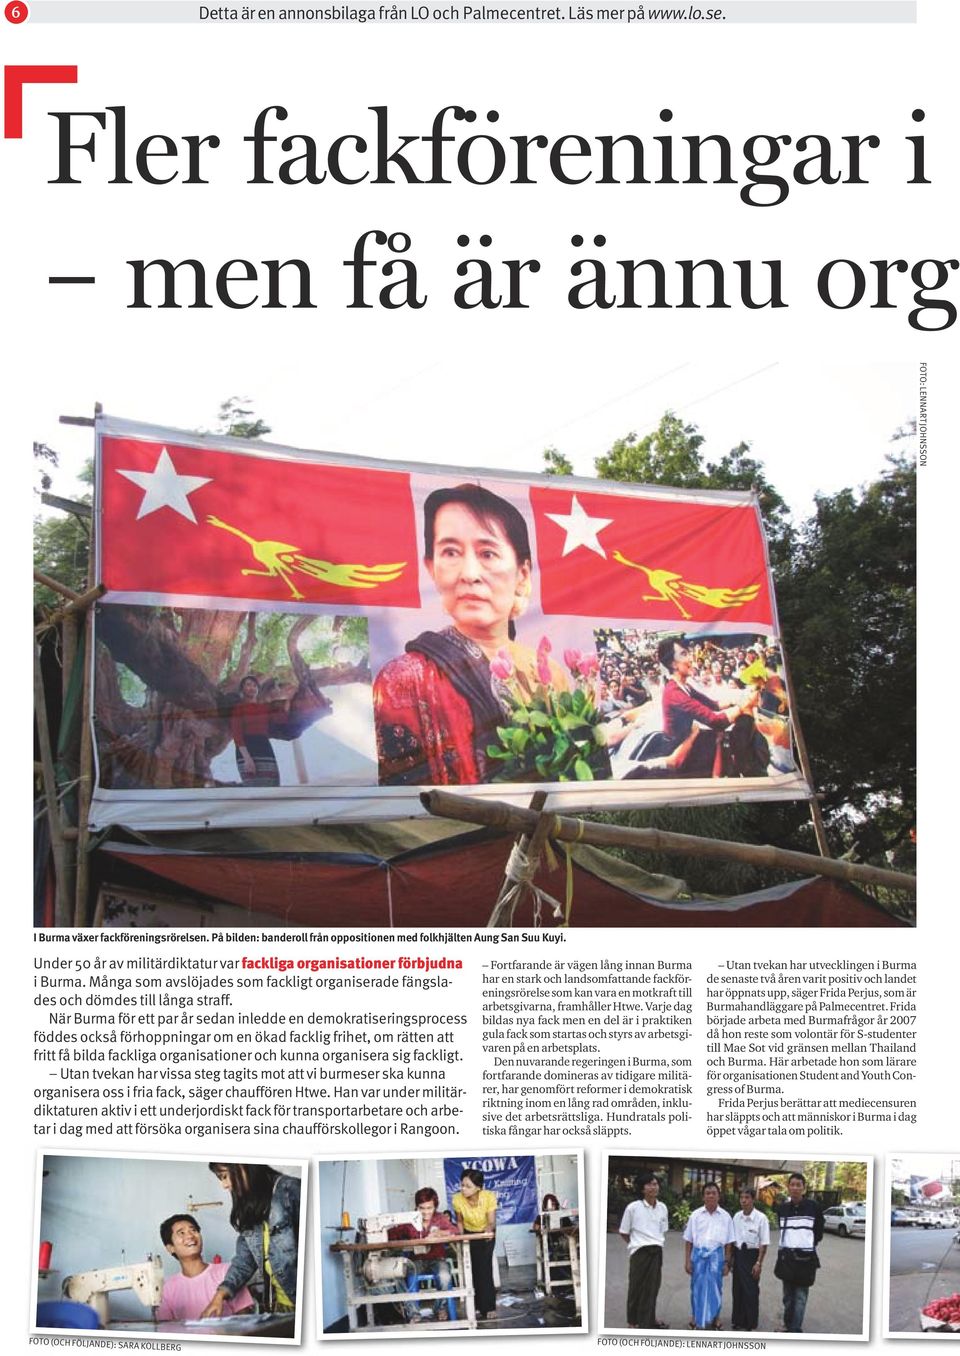 När Burma för ett par år sedan inledde en demokratiseringsprocess föddes också förhoppningar om en ökad facklig frihet, om rätten att fritt få bilda fackliga organisationer och kunna organisera sig